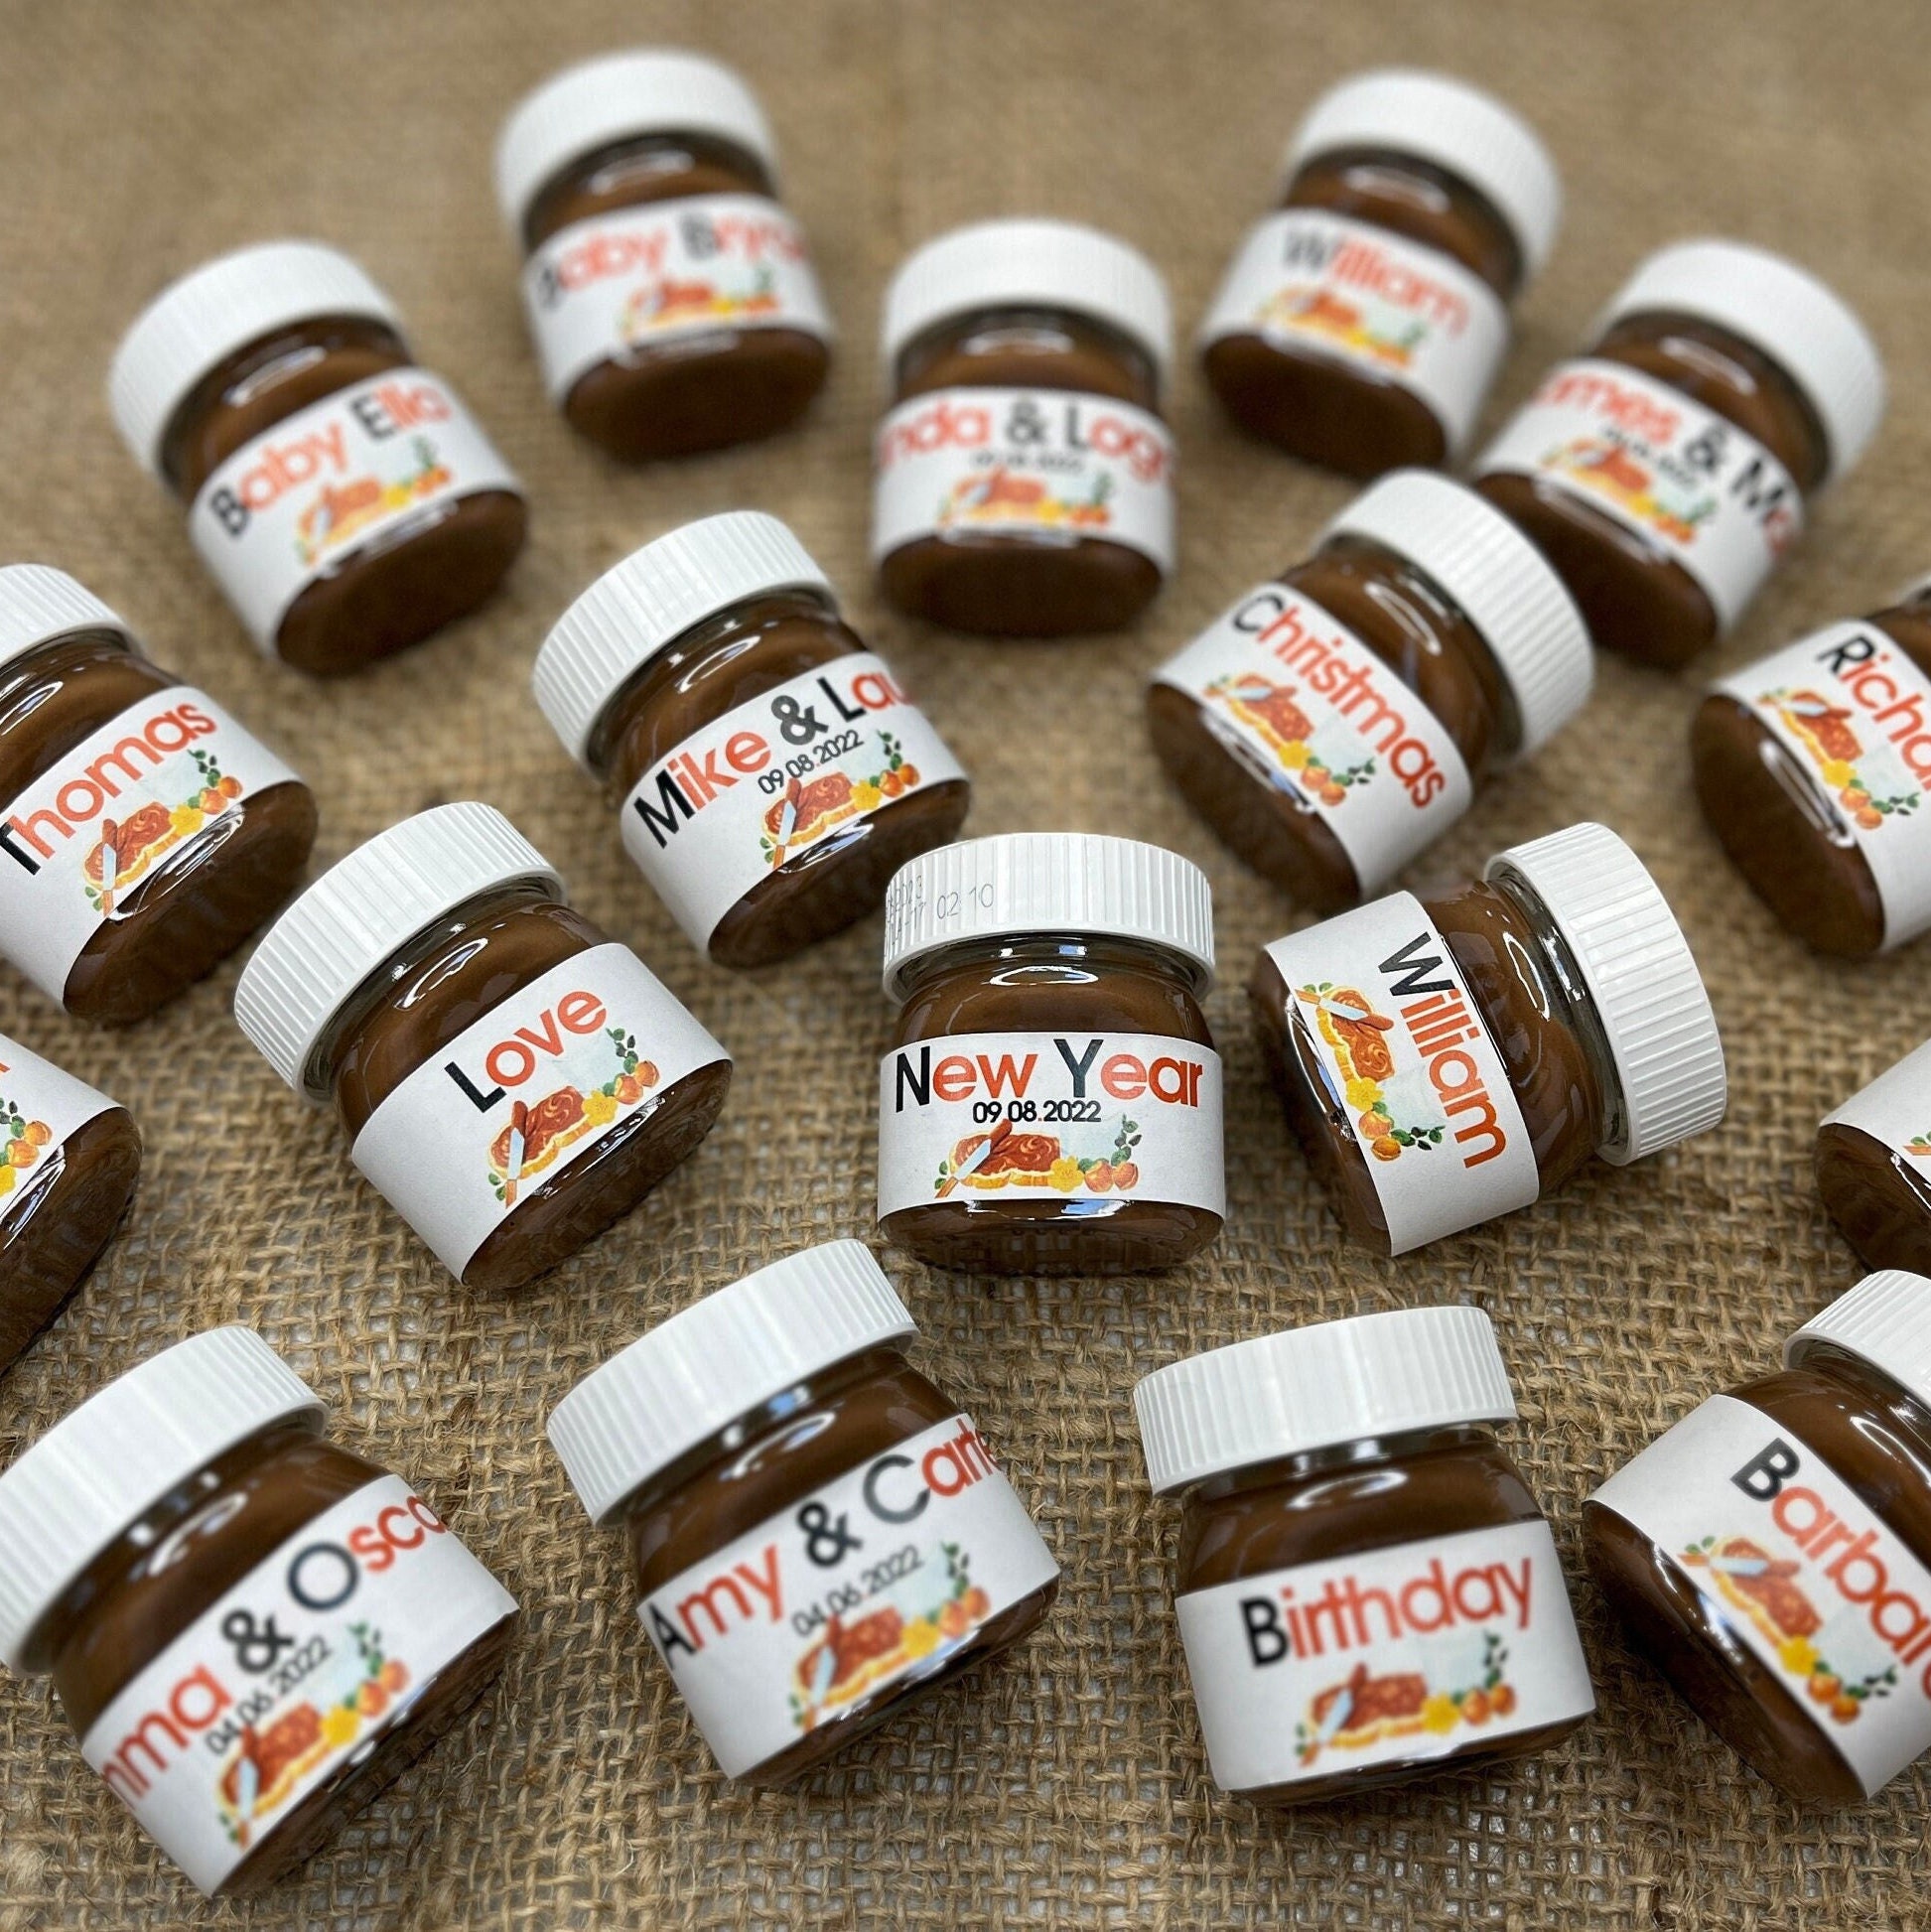 Nutella Mini Tarros de Regalo Personalizados 25 g -  México